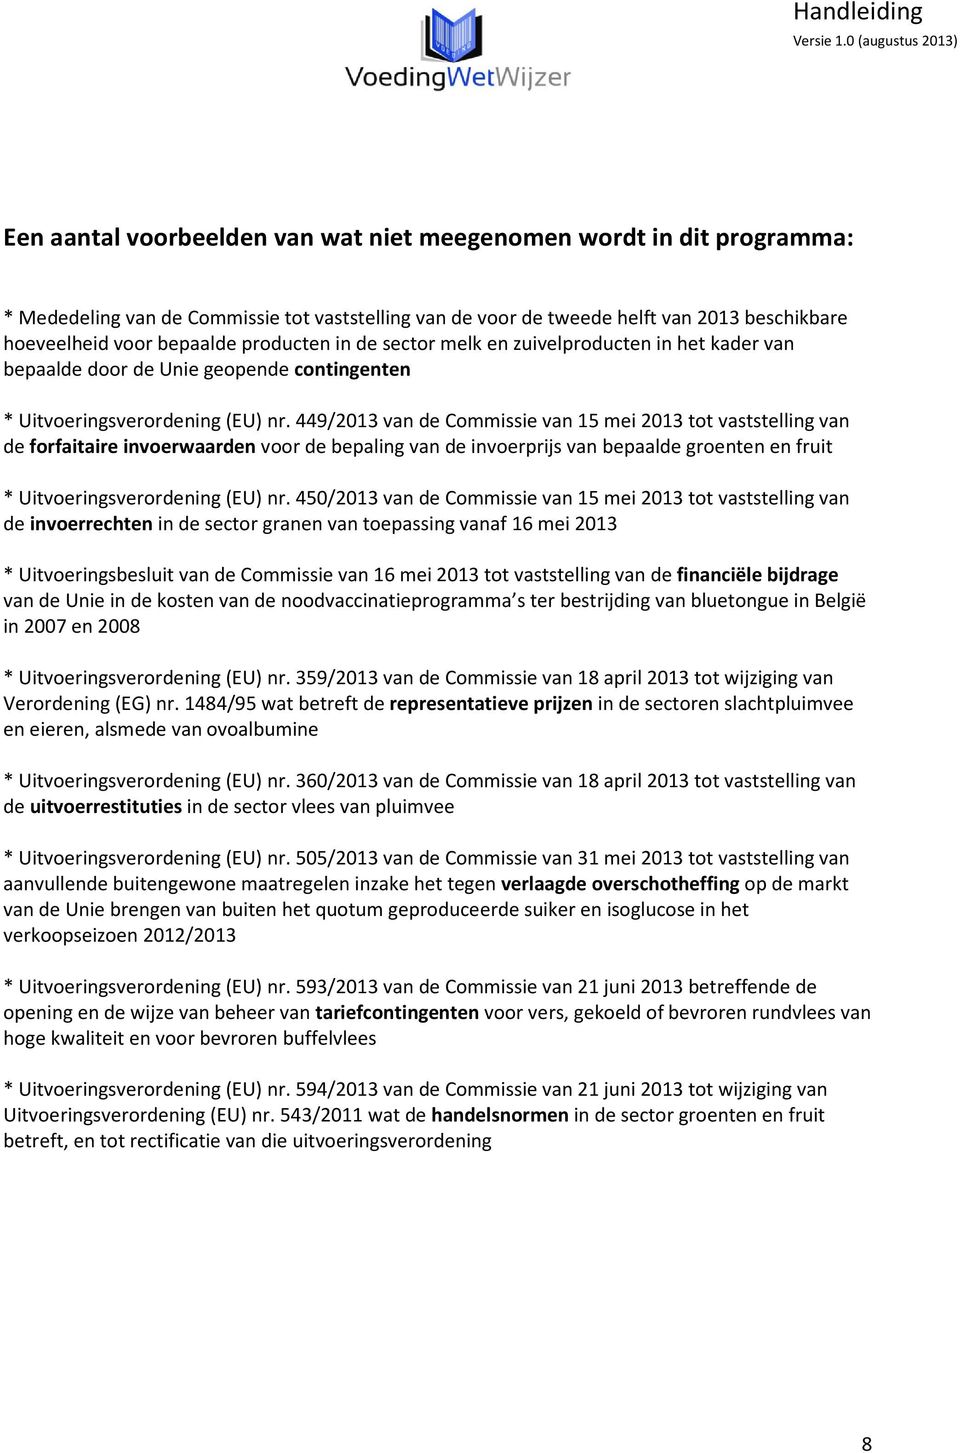 449/2013 van de Commissie van 15 mei 2013 tot vaststelling van de forfaitaire invoerwaarden voor de bepaling van de invoerprijs van bepaalde groenten en fruit * Uitvoeringsverordening (EU) nr.